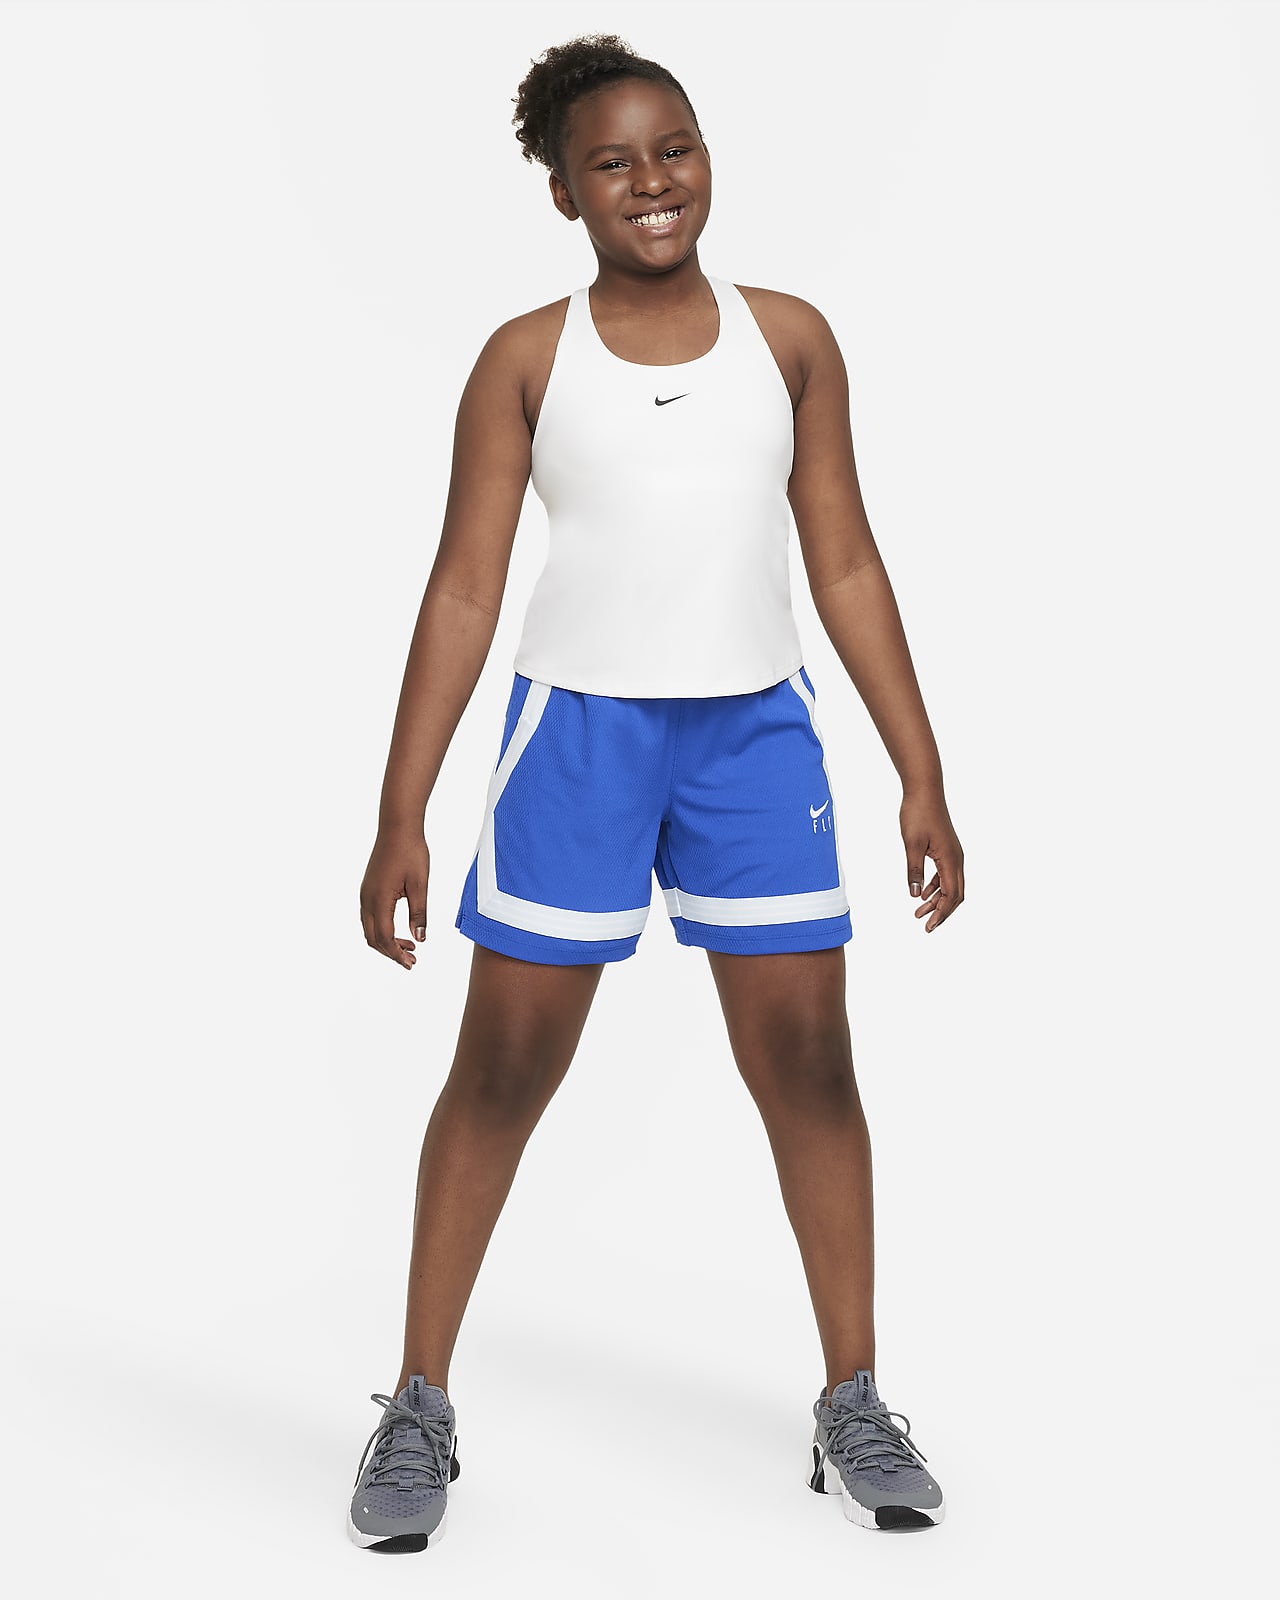 Nike Girls Dri-FIT Swoosh Tank Sports Bra White XS